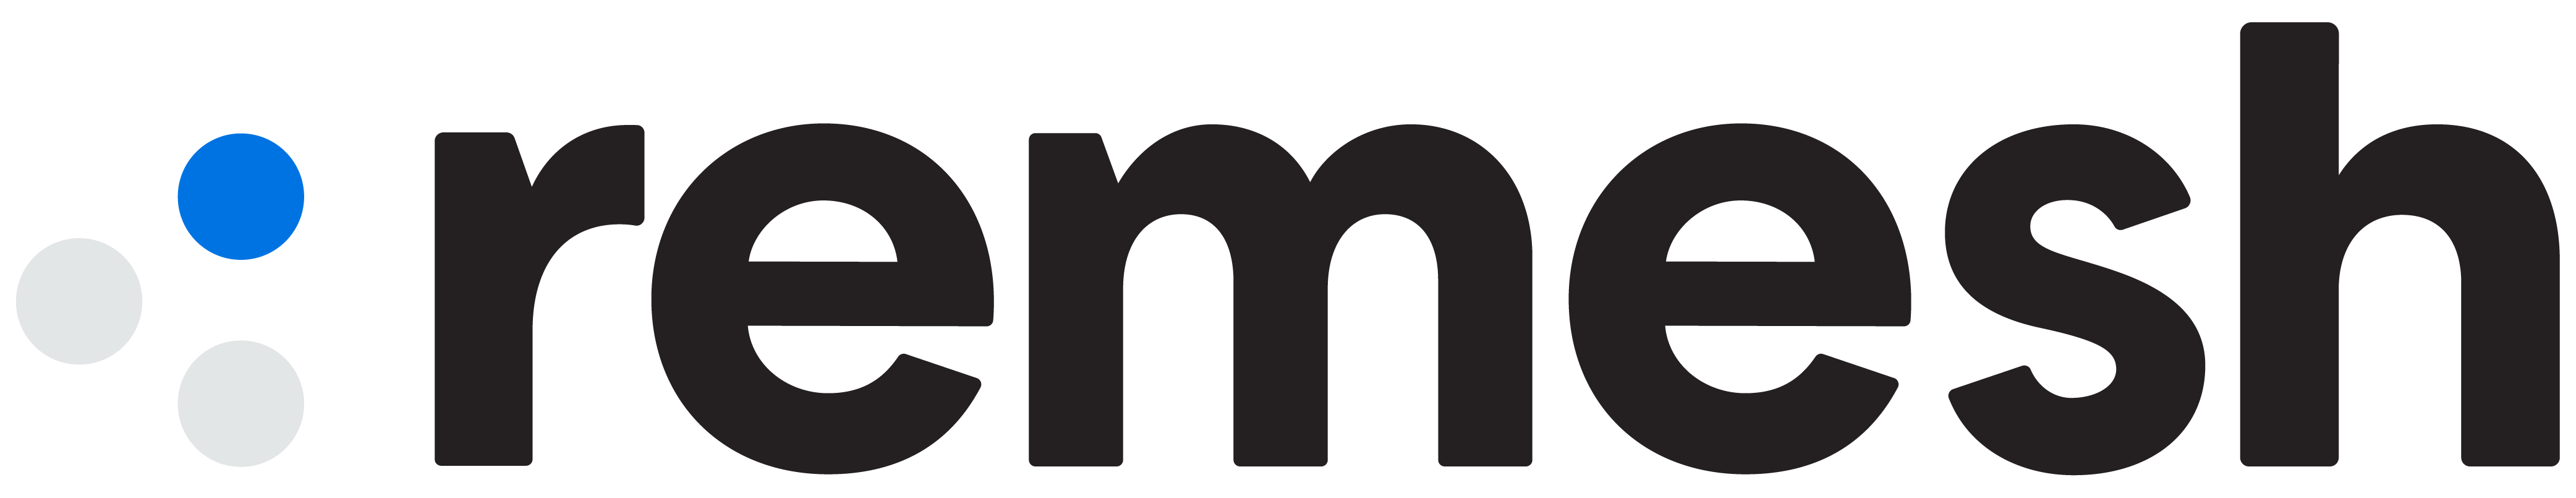 Remesh_Logo_WHITEBG-01